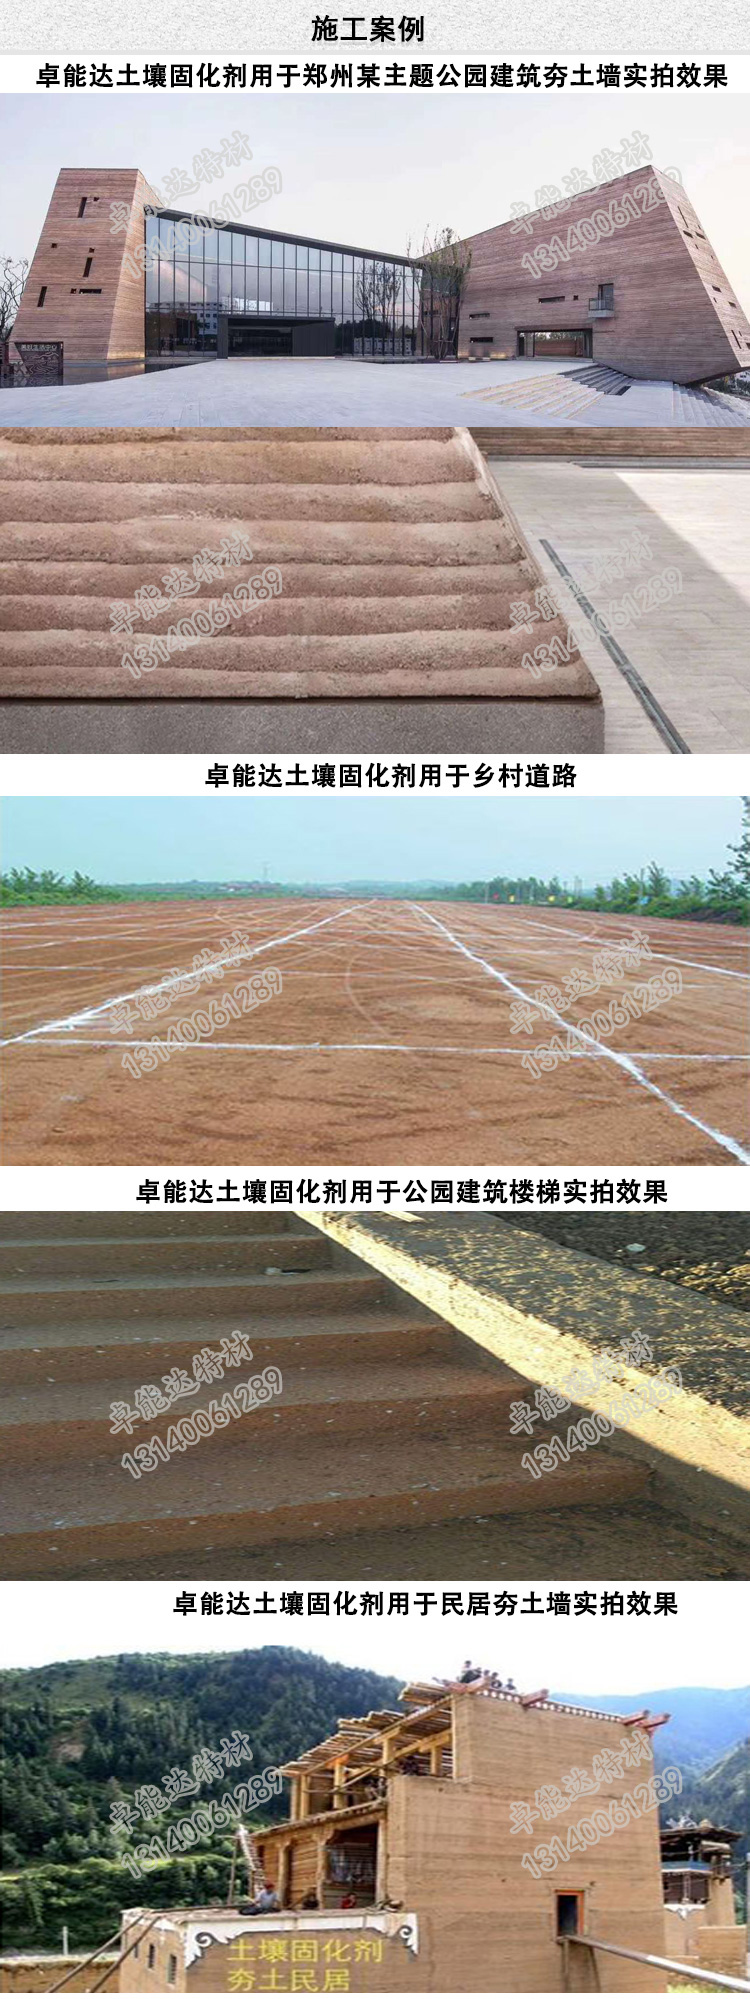 卓能达土壤固化剂施工案例-2.jpg